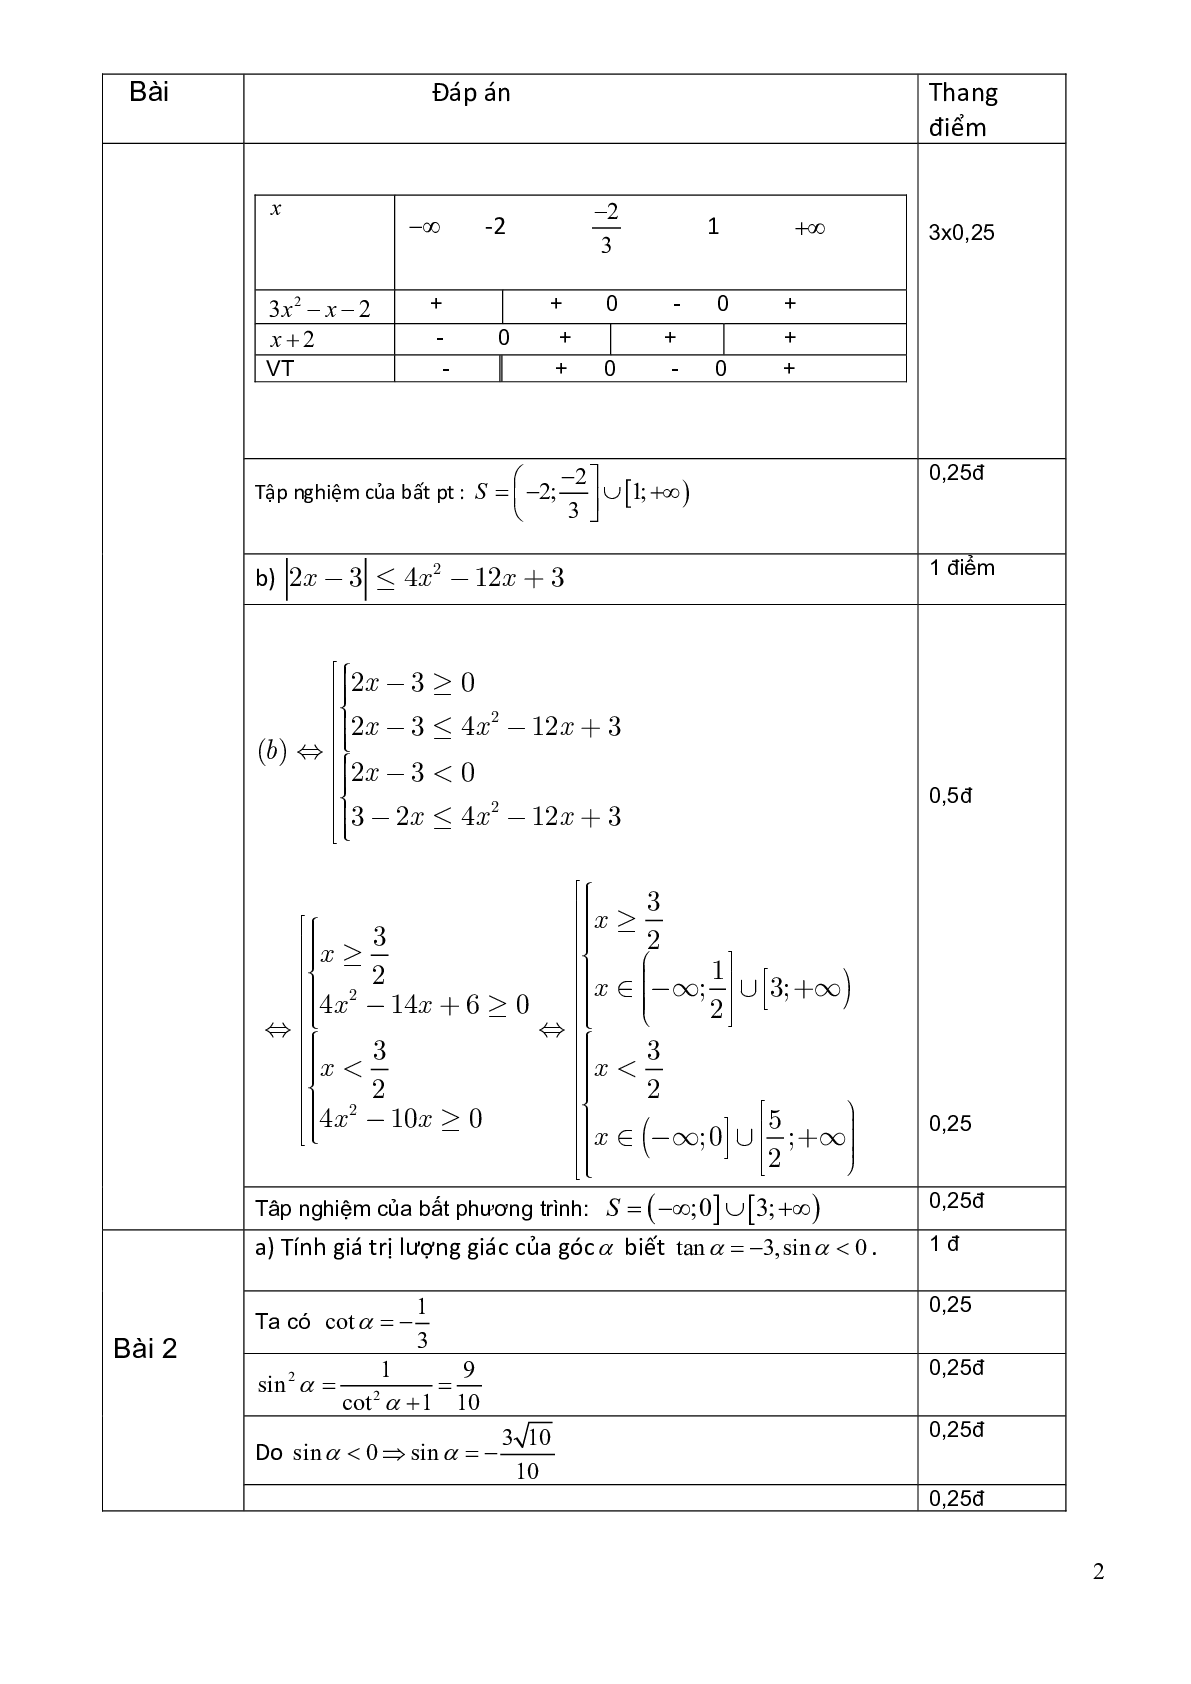 Đề thi cuối học kì 2 môn toán 10 trường THPT Ngô Gia Tự năm 2020-2021 (trang 4)